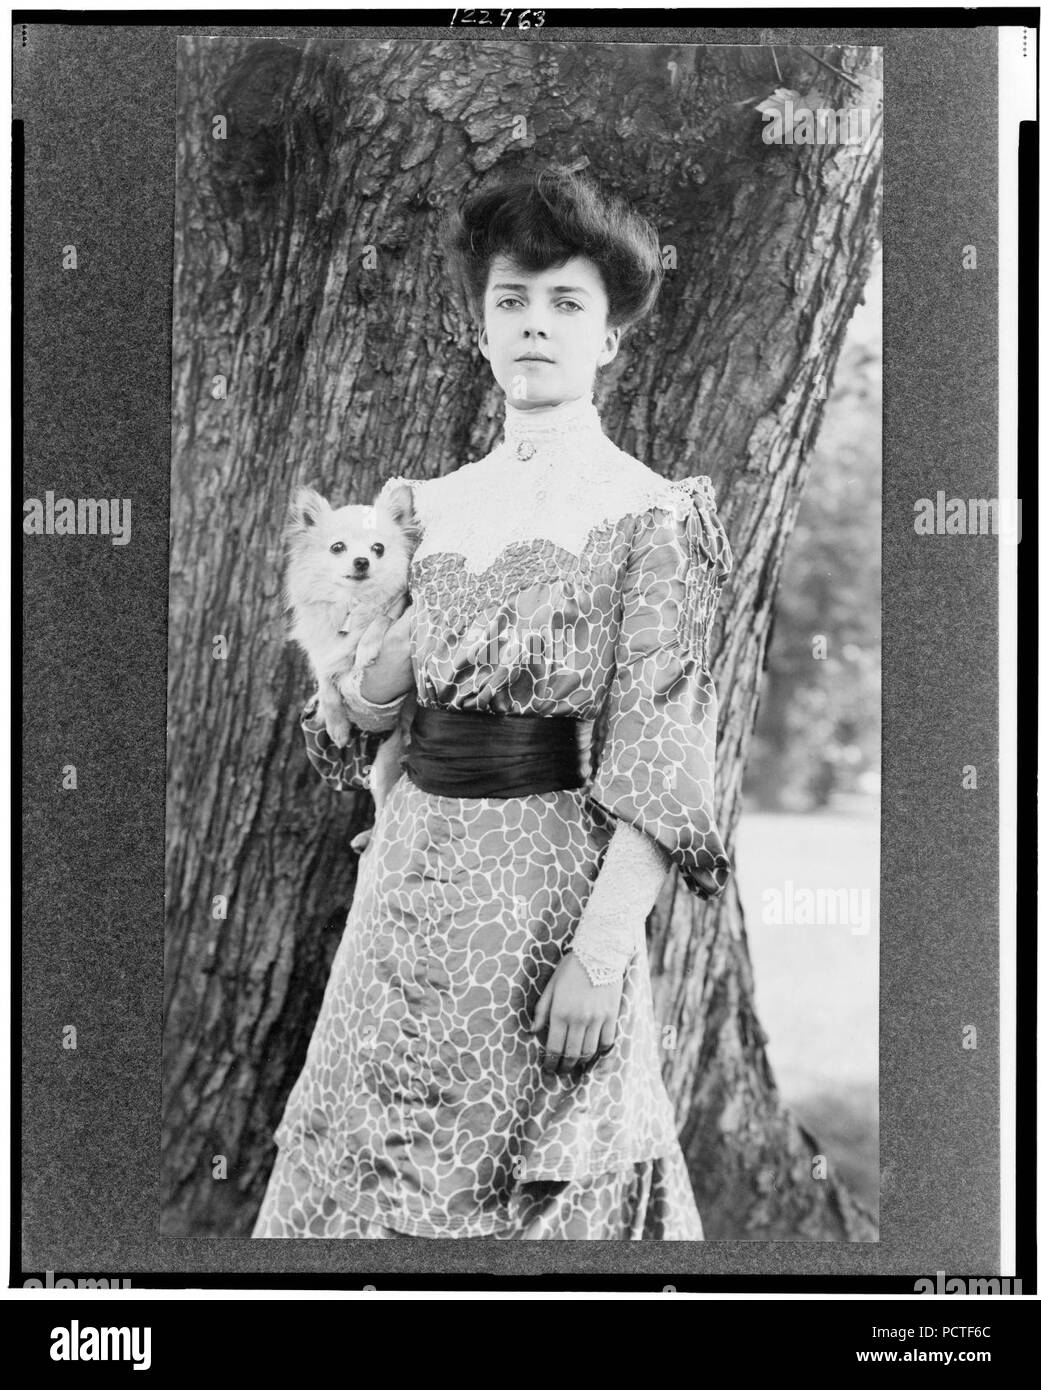 Alice Roosevelt Longworth, tre quarti di lunghezza verticale, in piedi di fronte ad albero, leggermente rivolta verso sinistra, tenere premuto un cane di piccola taglia Foto Stock